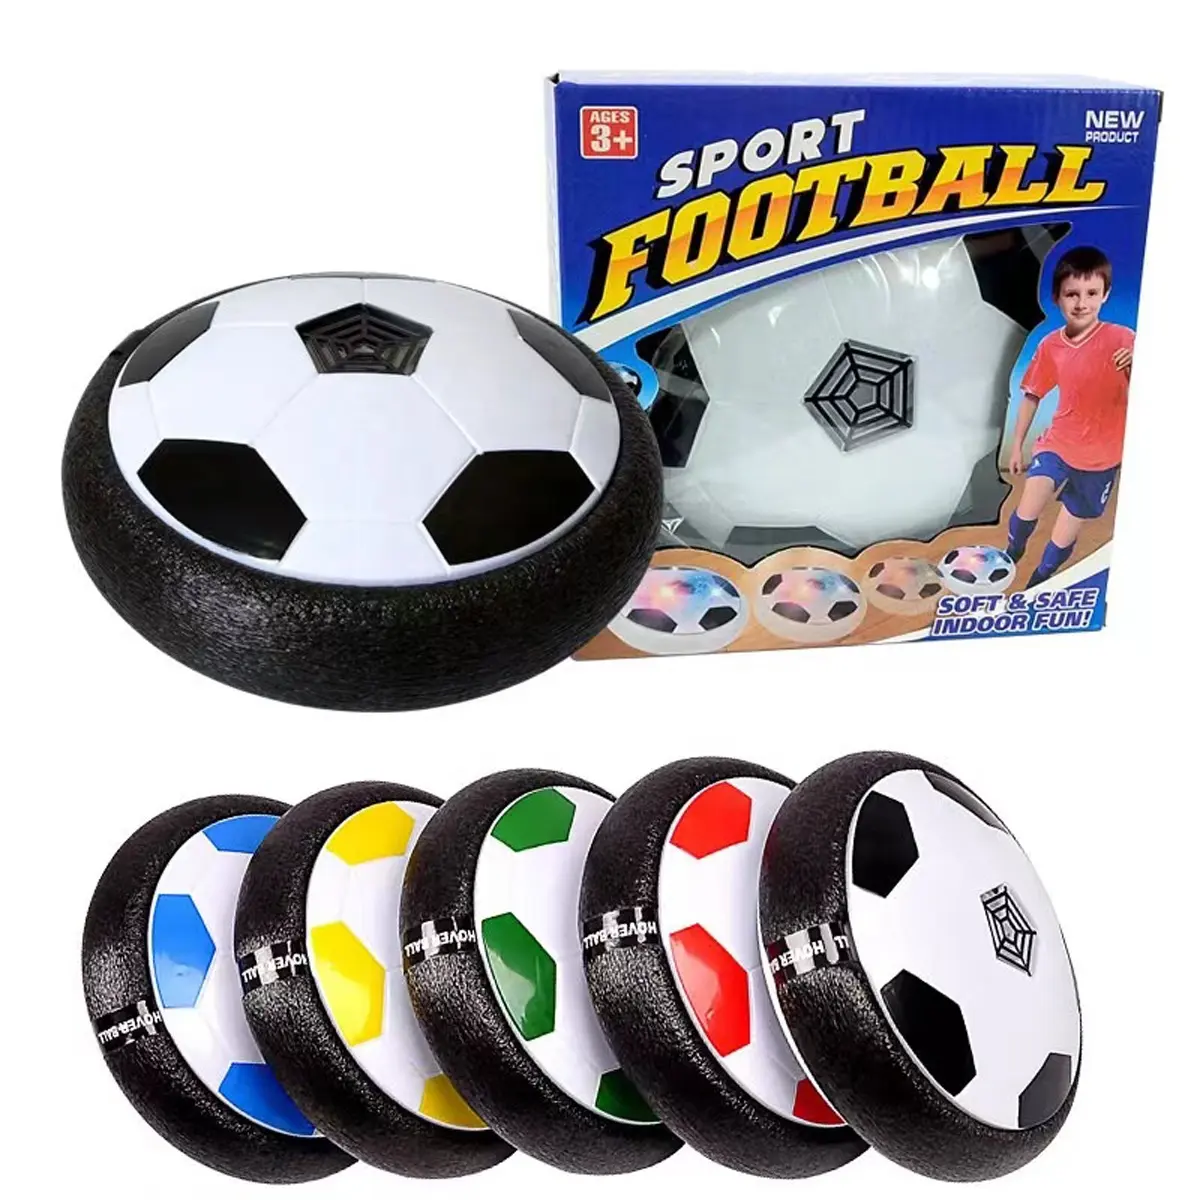 كرة قدم عائمة مضيئة بمصابيح LED بطول 18 سم، كرة قدم داخلية للأولاد والبنات، كرة تدريب بالطاقة الهوائية للعب كرة القدم داخل المنزل